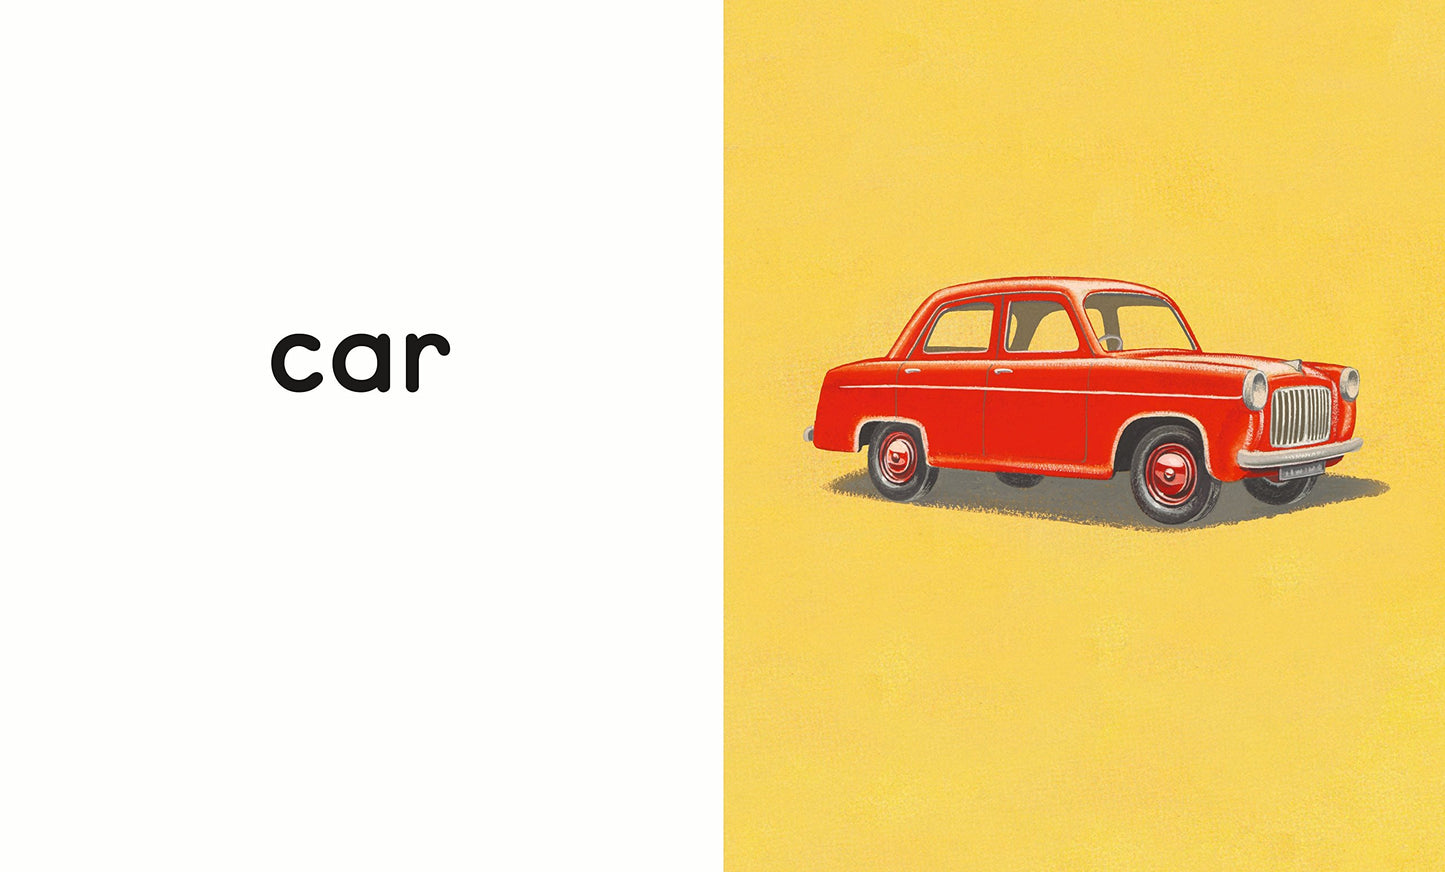 A Ladybird Book: Vehicles